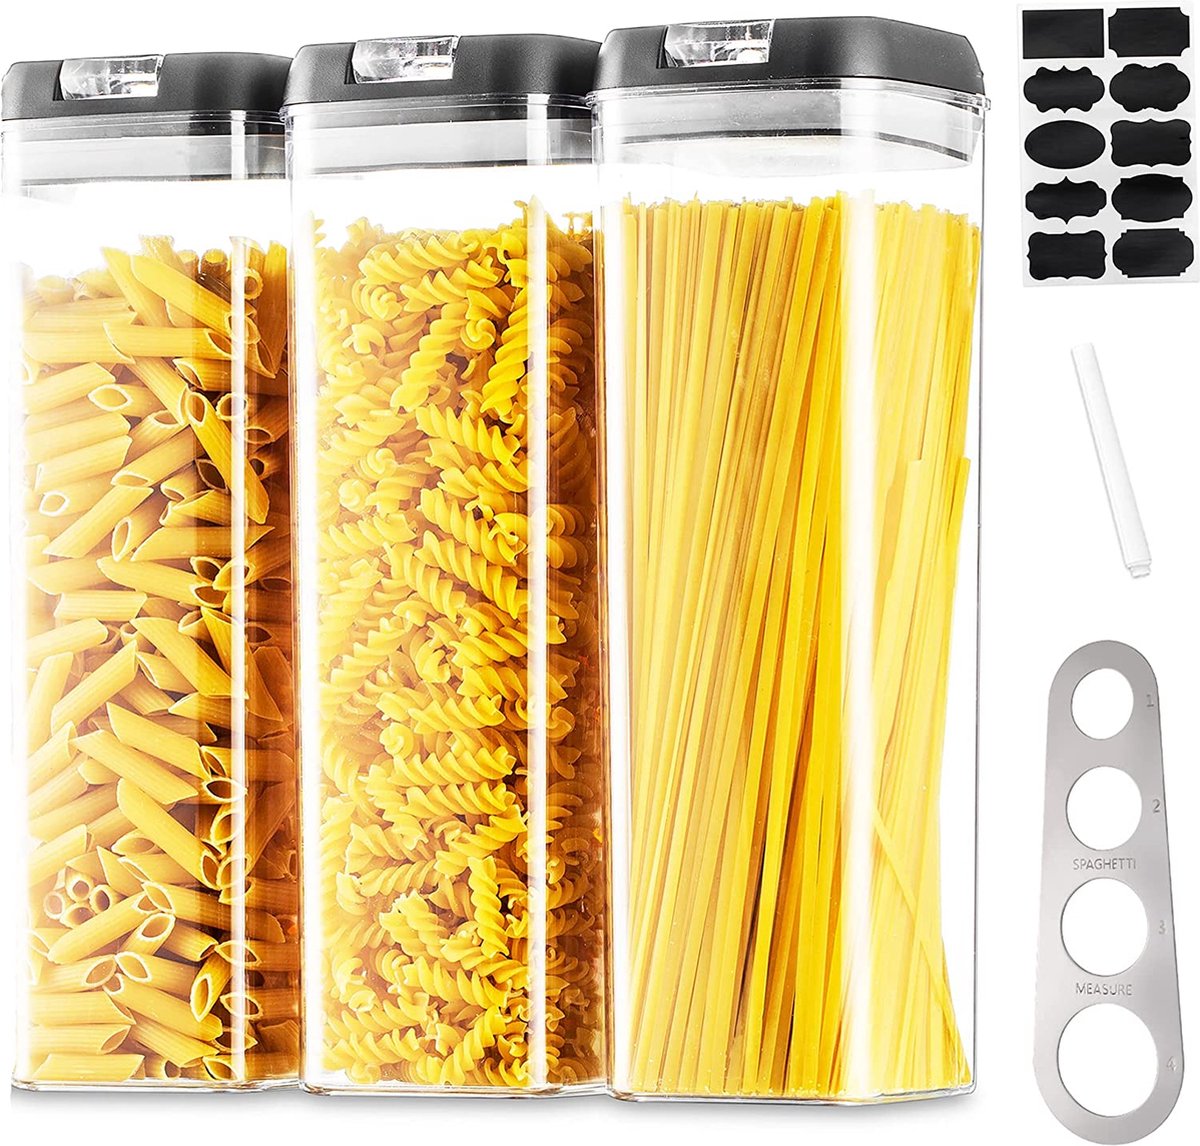 Voorraaddozen opbergdoos keuken voorraaddozen opslag: 3 stuks luchtdichte pasta bakjes set met zwart eenvoudig deksel stapelbaar voedsel bewaren voor spaghetti muesli cornflakes